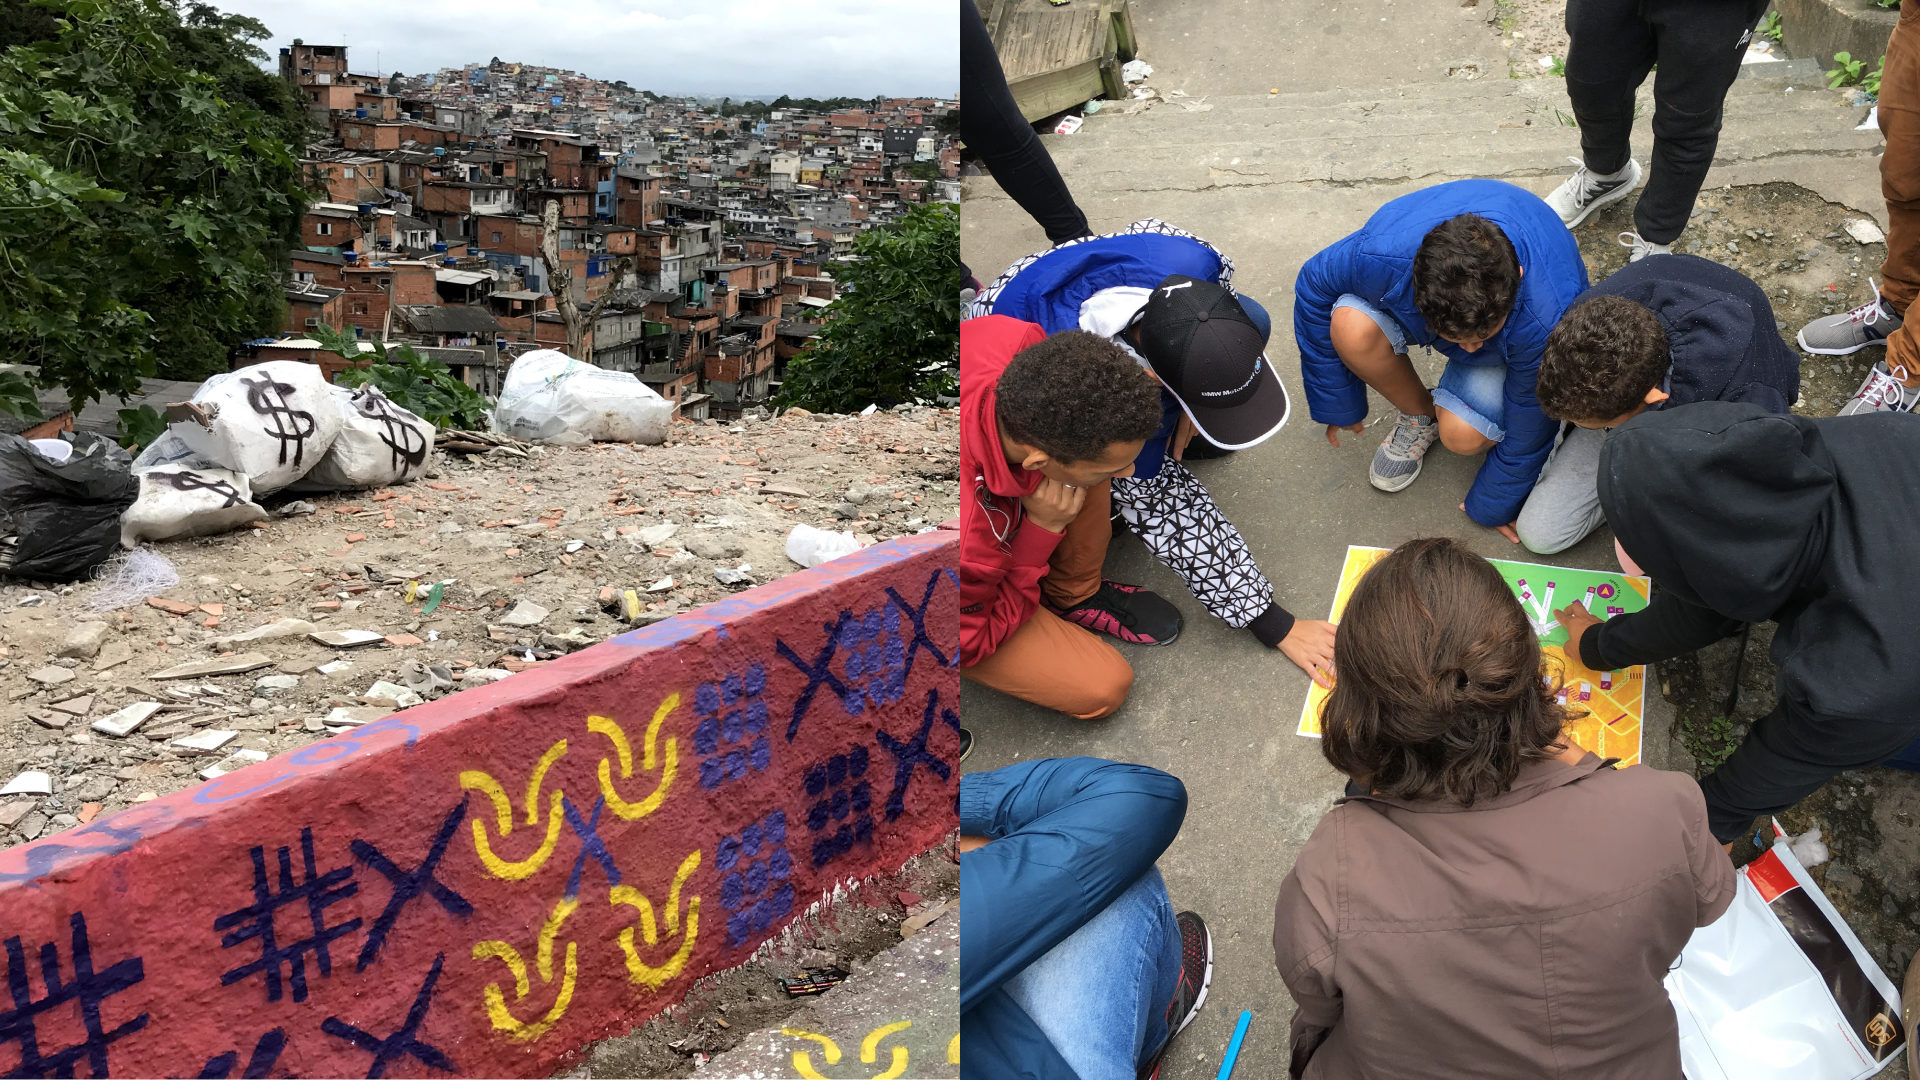 Padrões criados para a identidade visual do projeto feitos com spray e stencil pelas crianças do bairro. Na imagem ao lado crianças identificam pontos de interesse no mapa do bairro.